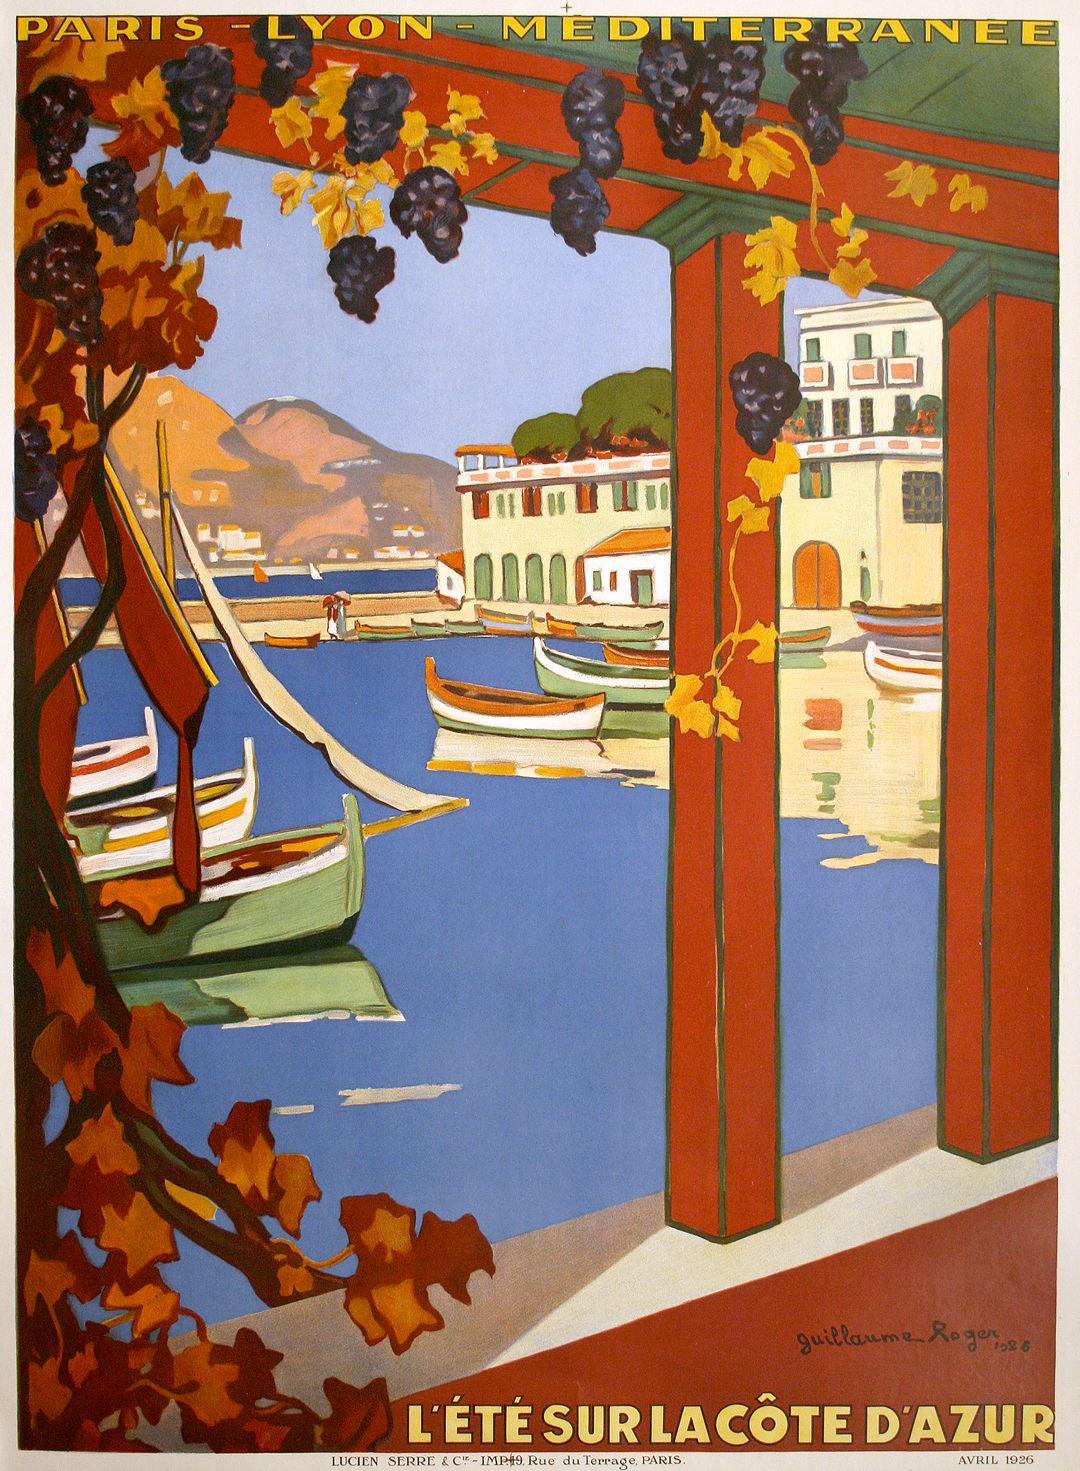 L'Ete' Sur La Cote D'Azur Poster 1926 by Guillaume Georges Roger for PLM